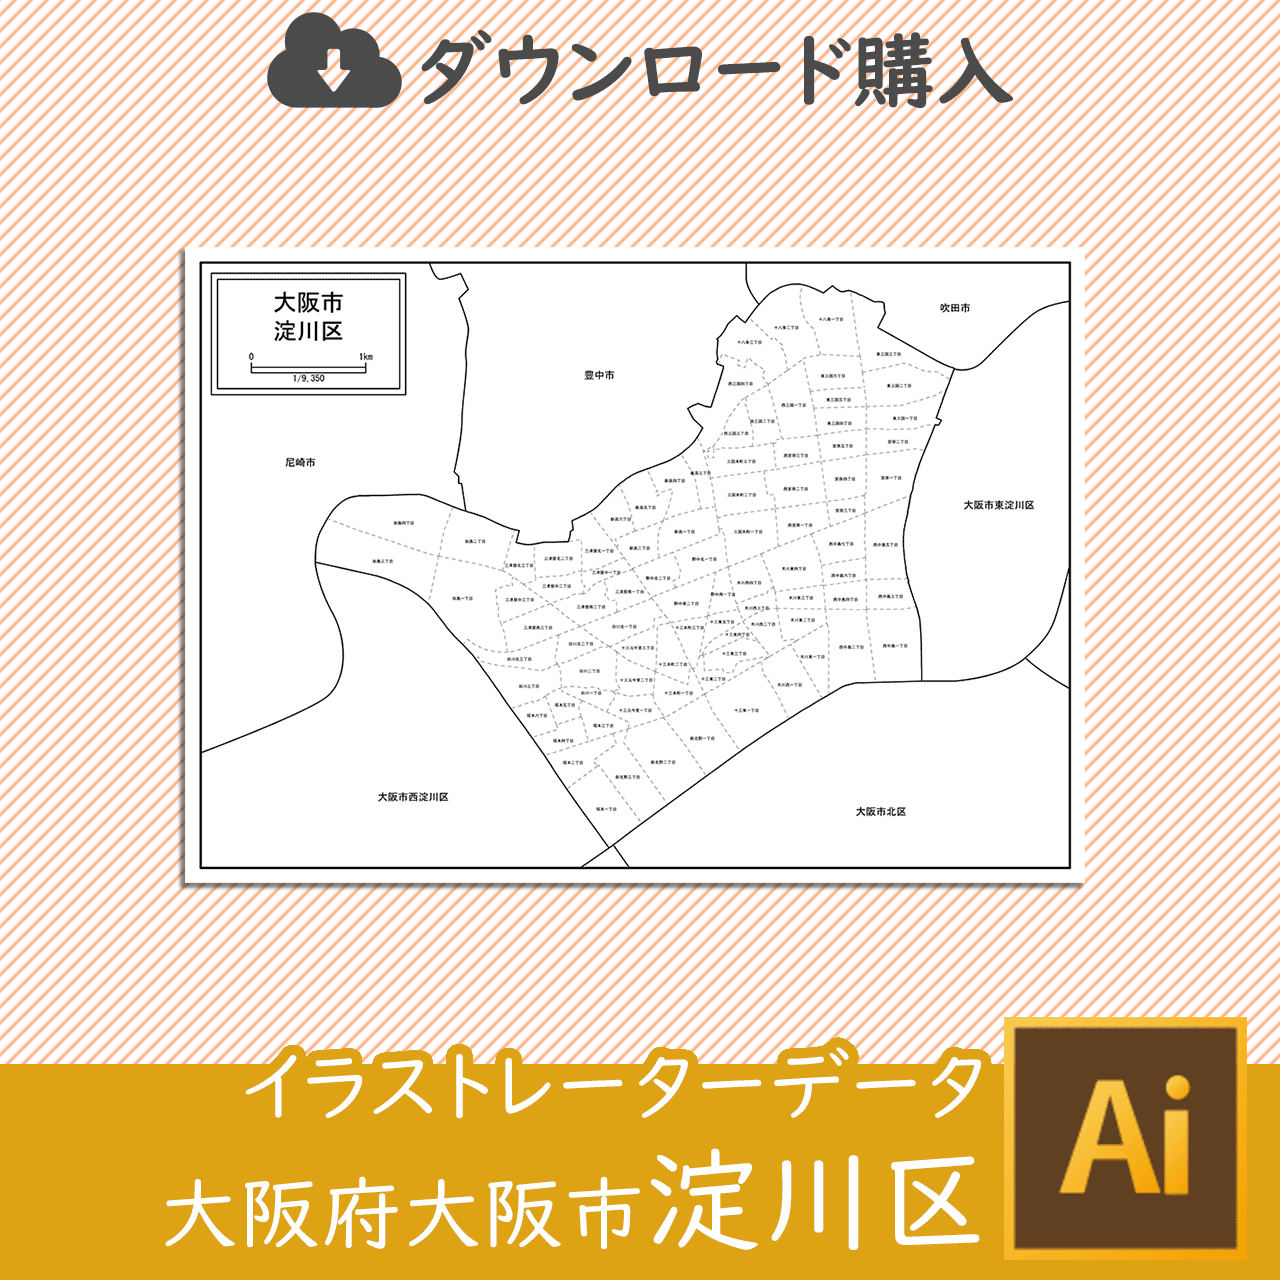 大阪市淀川区のaiデータのサムネイル画像